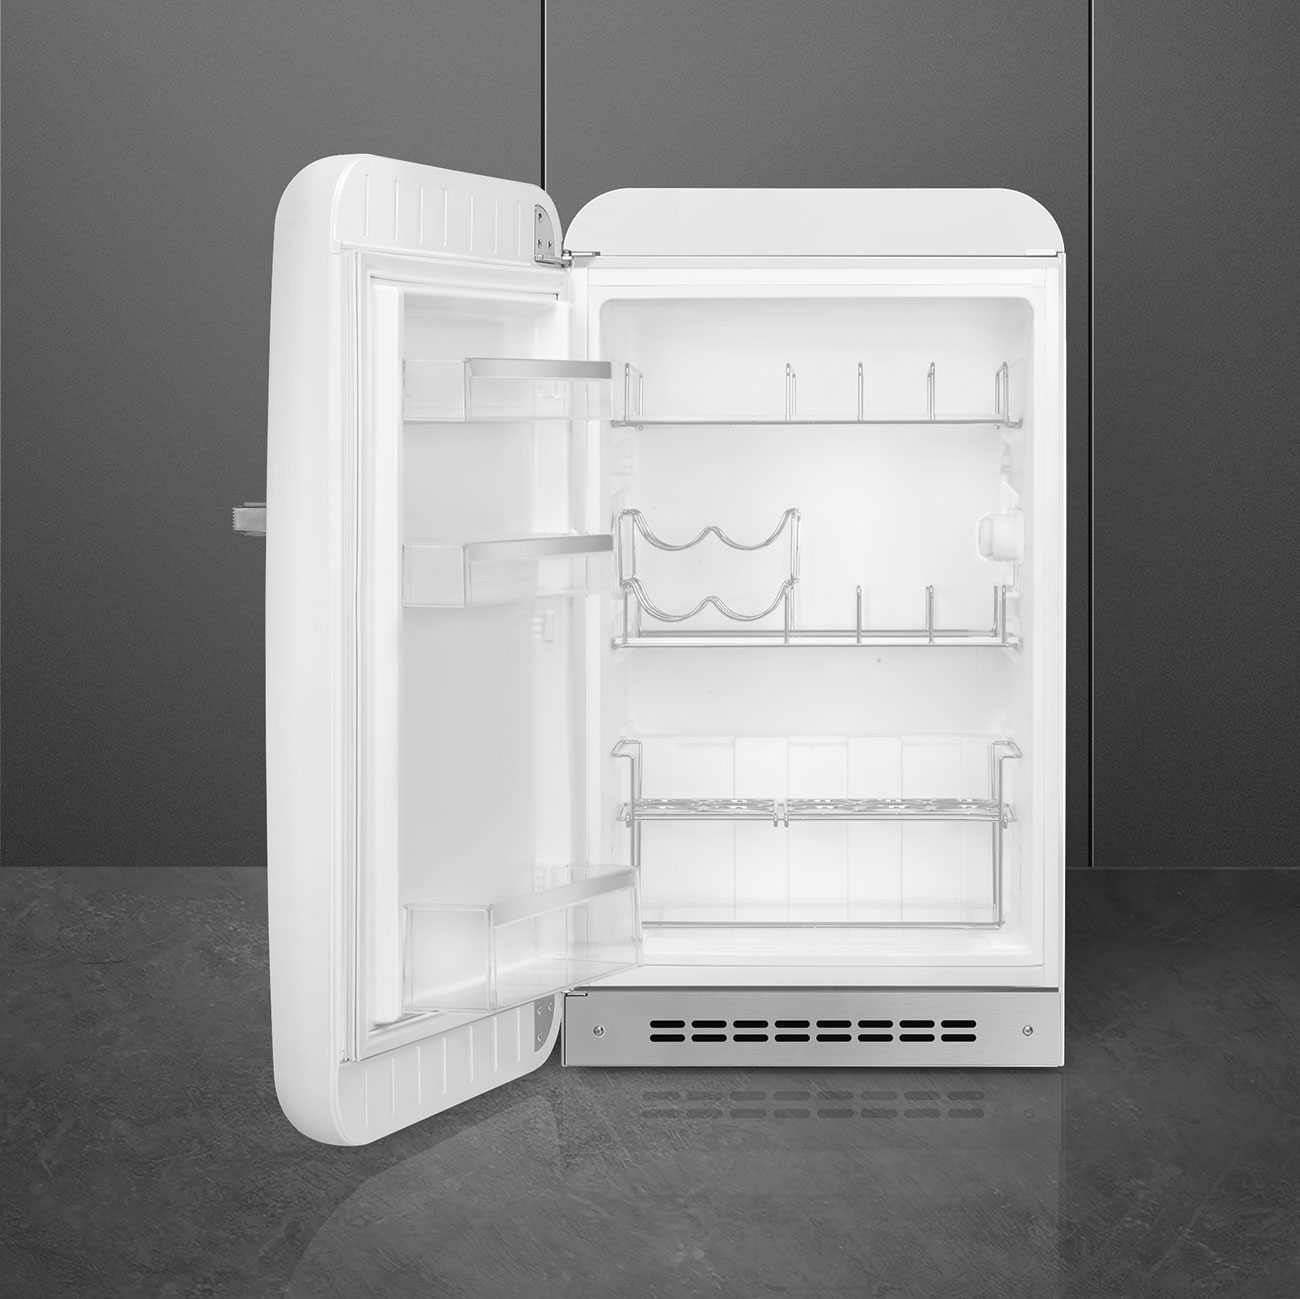 White refrigerator - Smeg_2